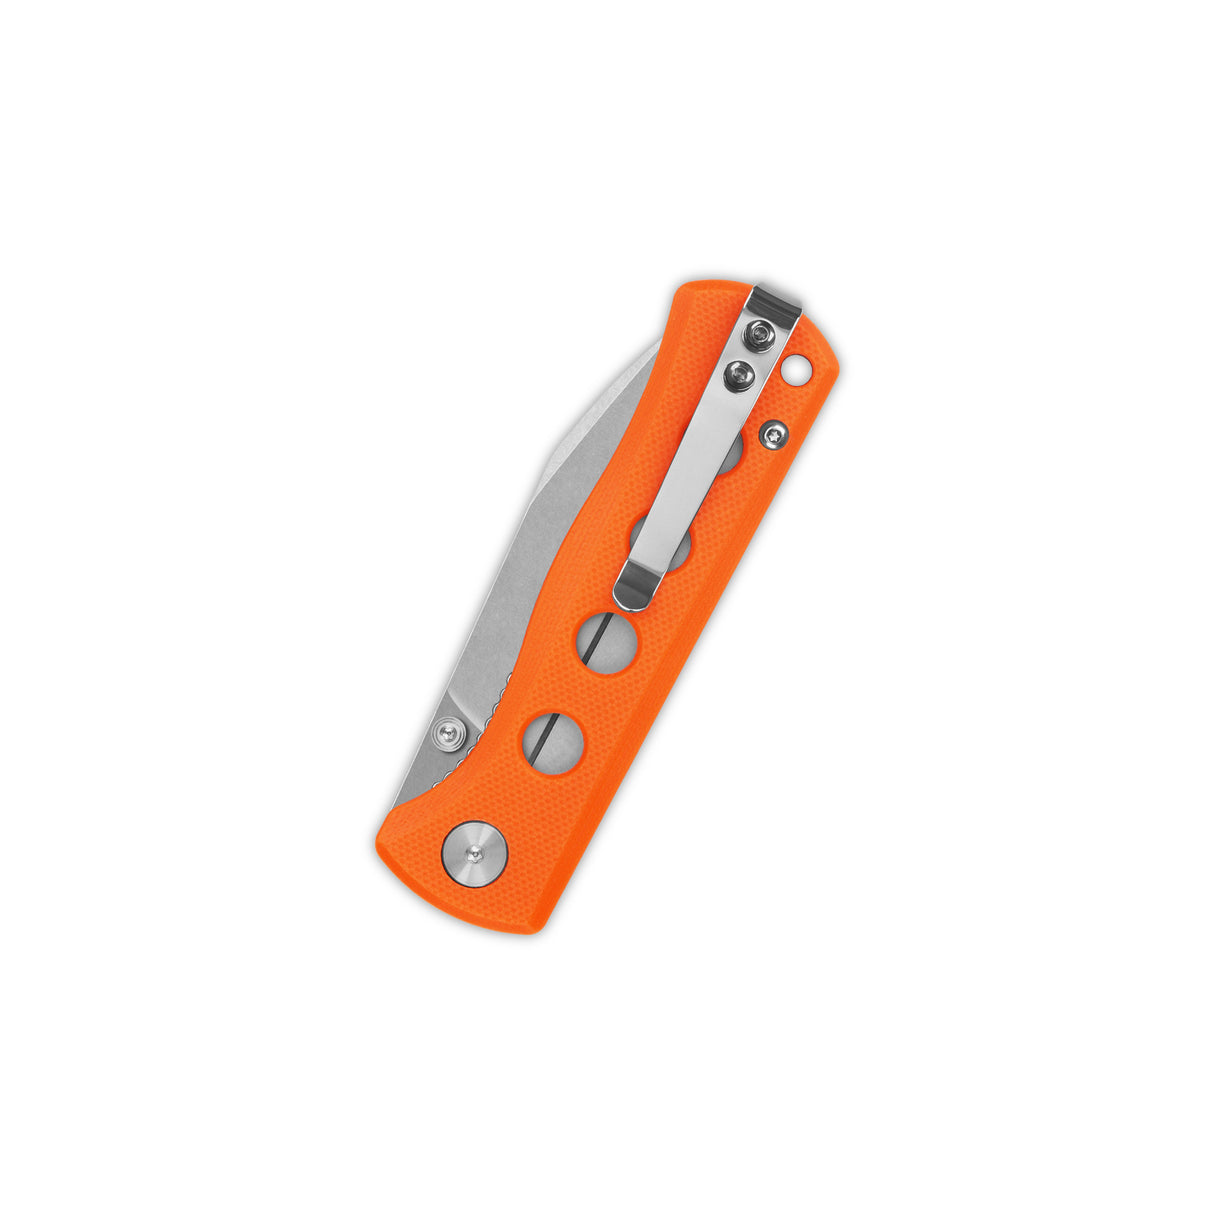 QSP Canary Folder Liner Lock Pocket Knife 14C28N Blade Orange G10 Handle